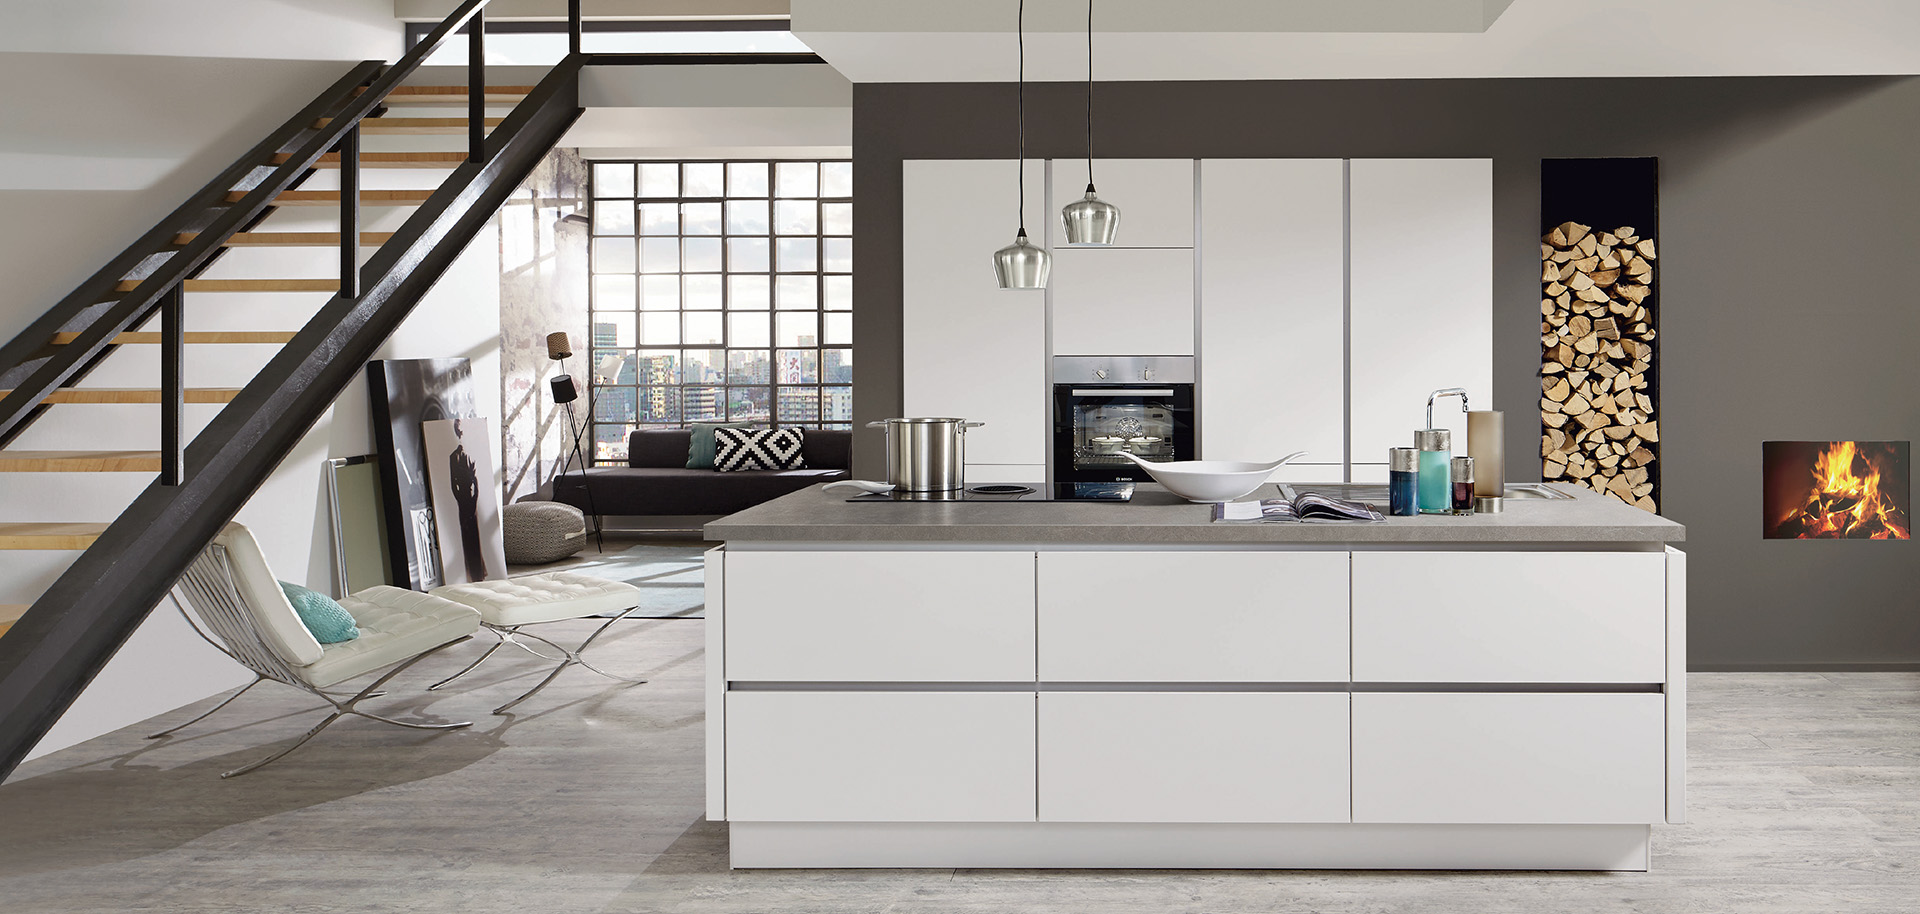 Moderne keukeninterieur met strakke lijnen met witte kasten, roestvrijstalen apparaten en een aangrenzende gezellige woonruimte met een open haard.